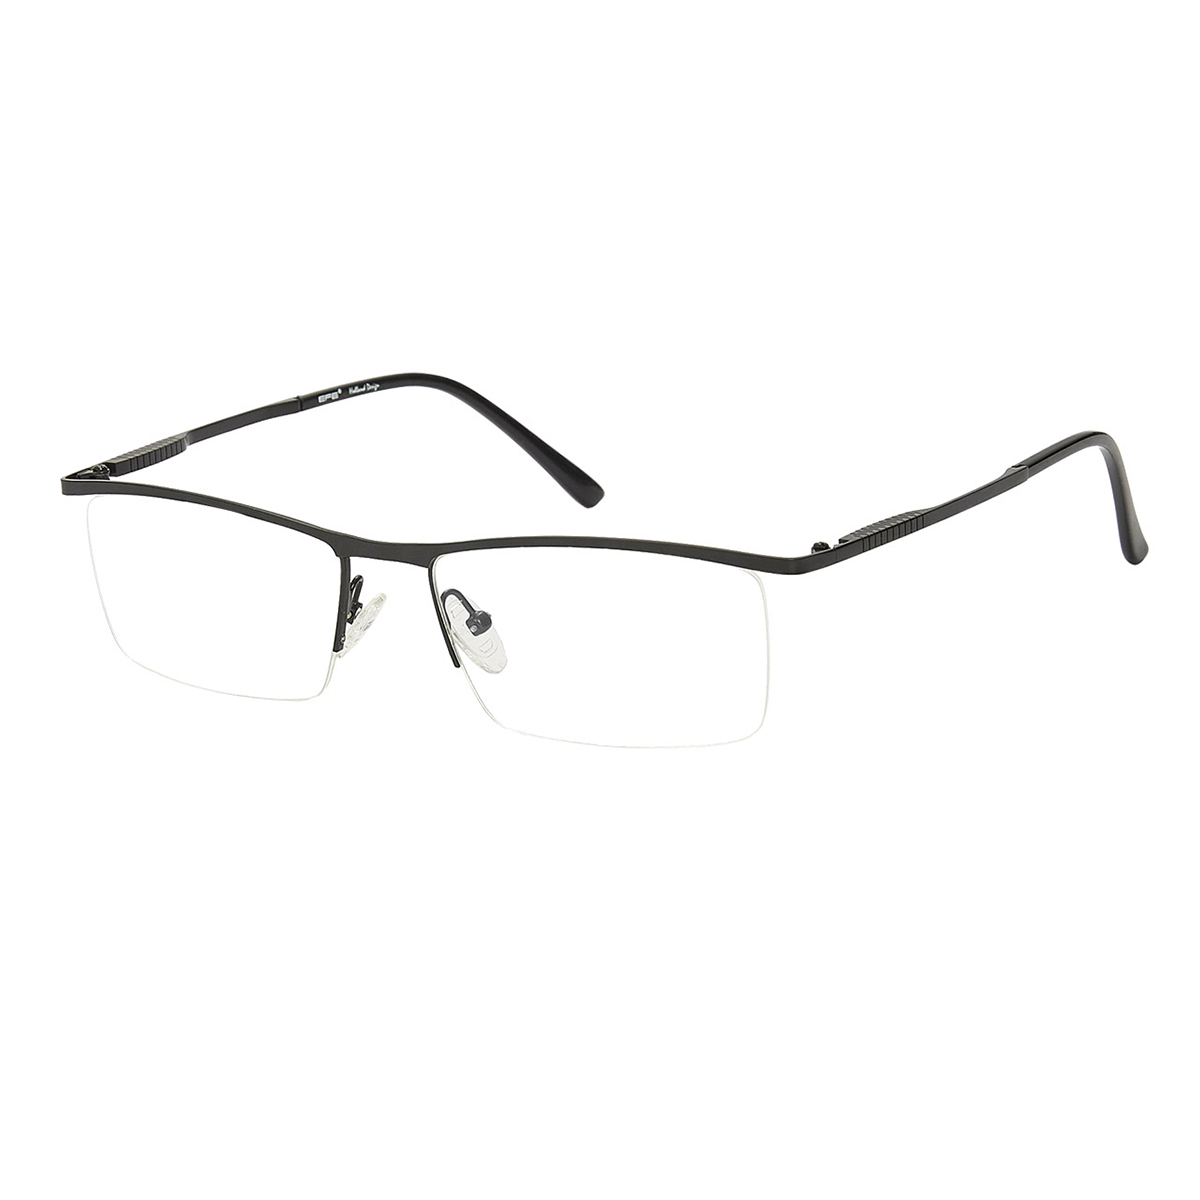 Triton - Browline Black Reading Glasses for Men